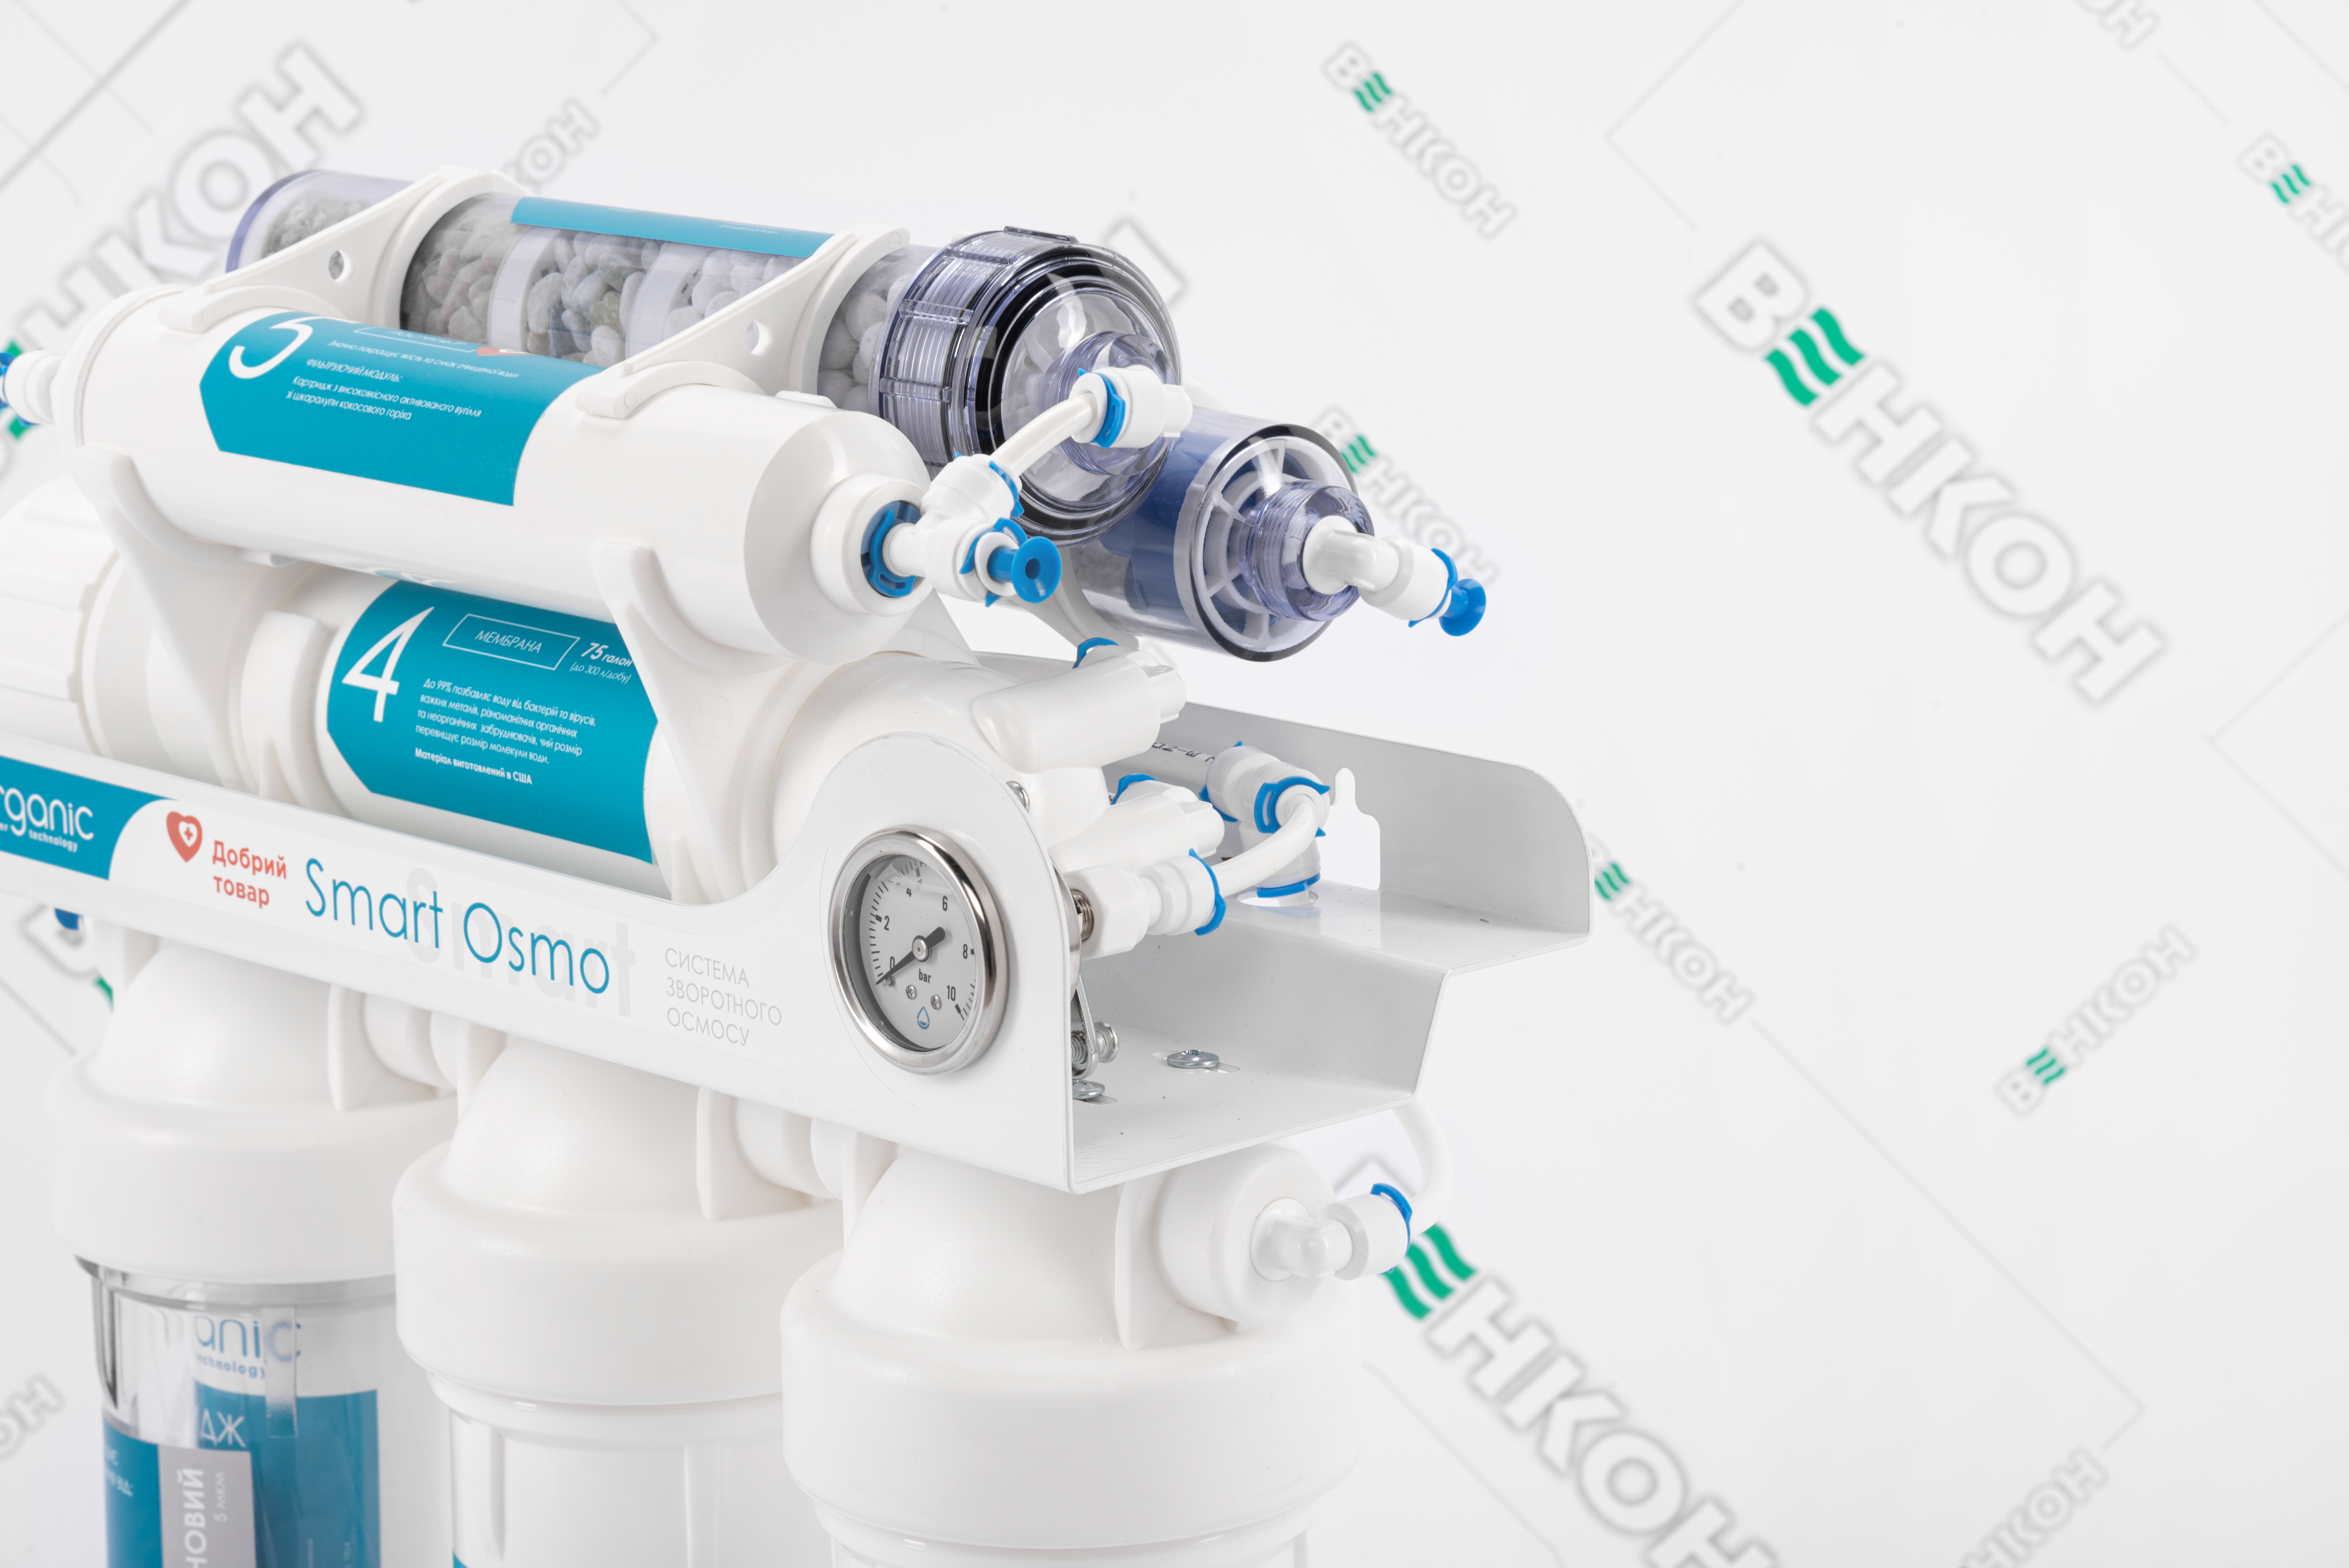 Фільтр для води Organic Smart Osmo 7 характеристики - фотографія 7